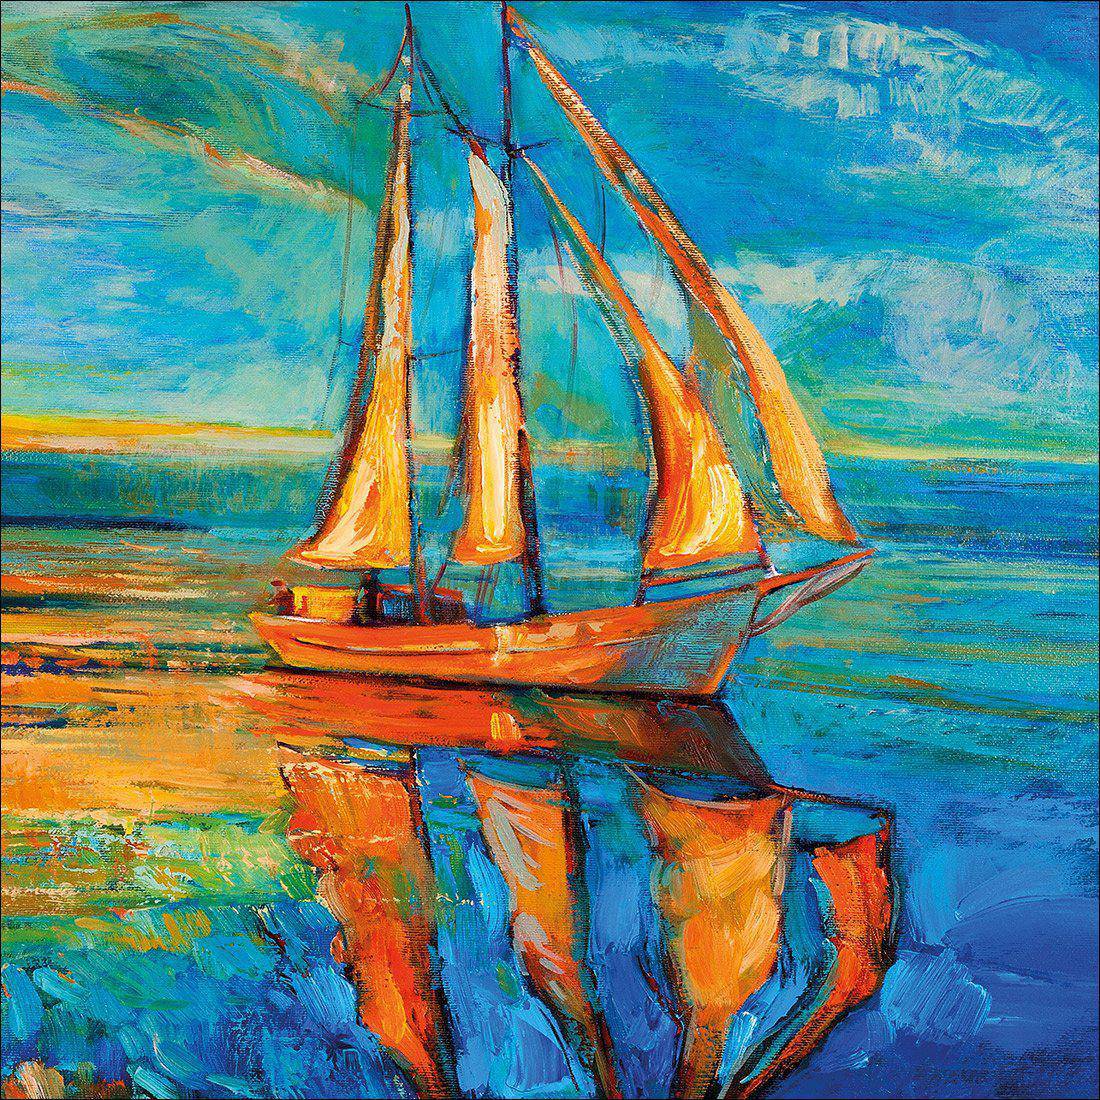 Sailing Boat Reflected Canvas Art-Canvas-Wall Art Designs-30x30cm-Canvas - No Frame-Wall Art Designs